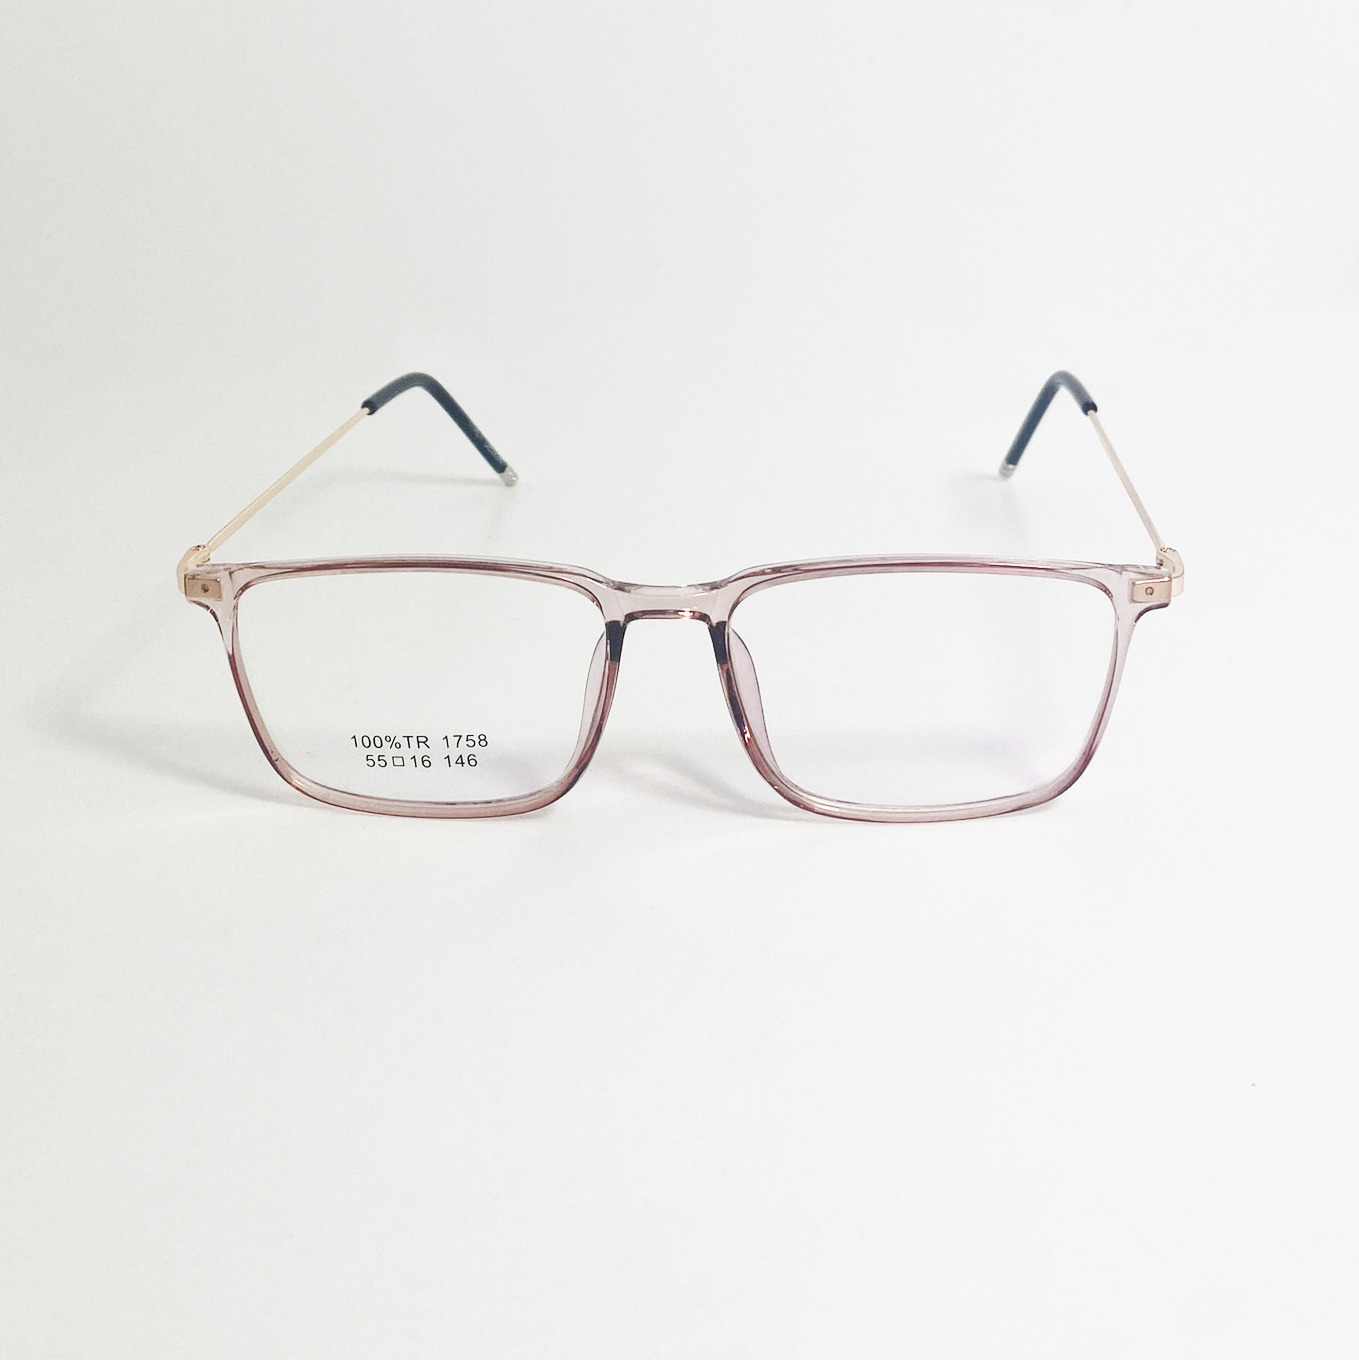 Mắt kính giả cận nam nữ Jun Secret gọng kim loại, tròng vuông 0 độ kiểu dáng sang chảnh, chống bụi, chống tia UV JS1758